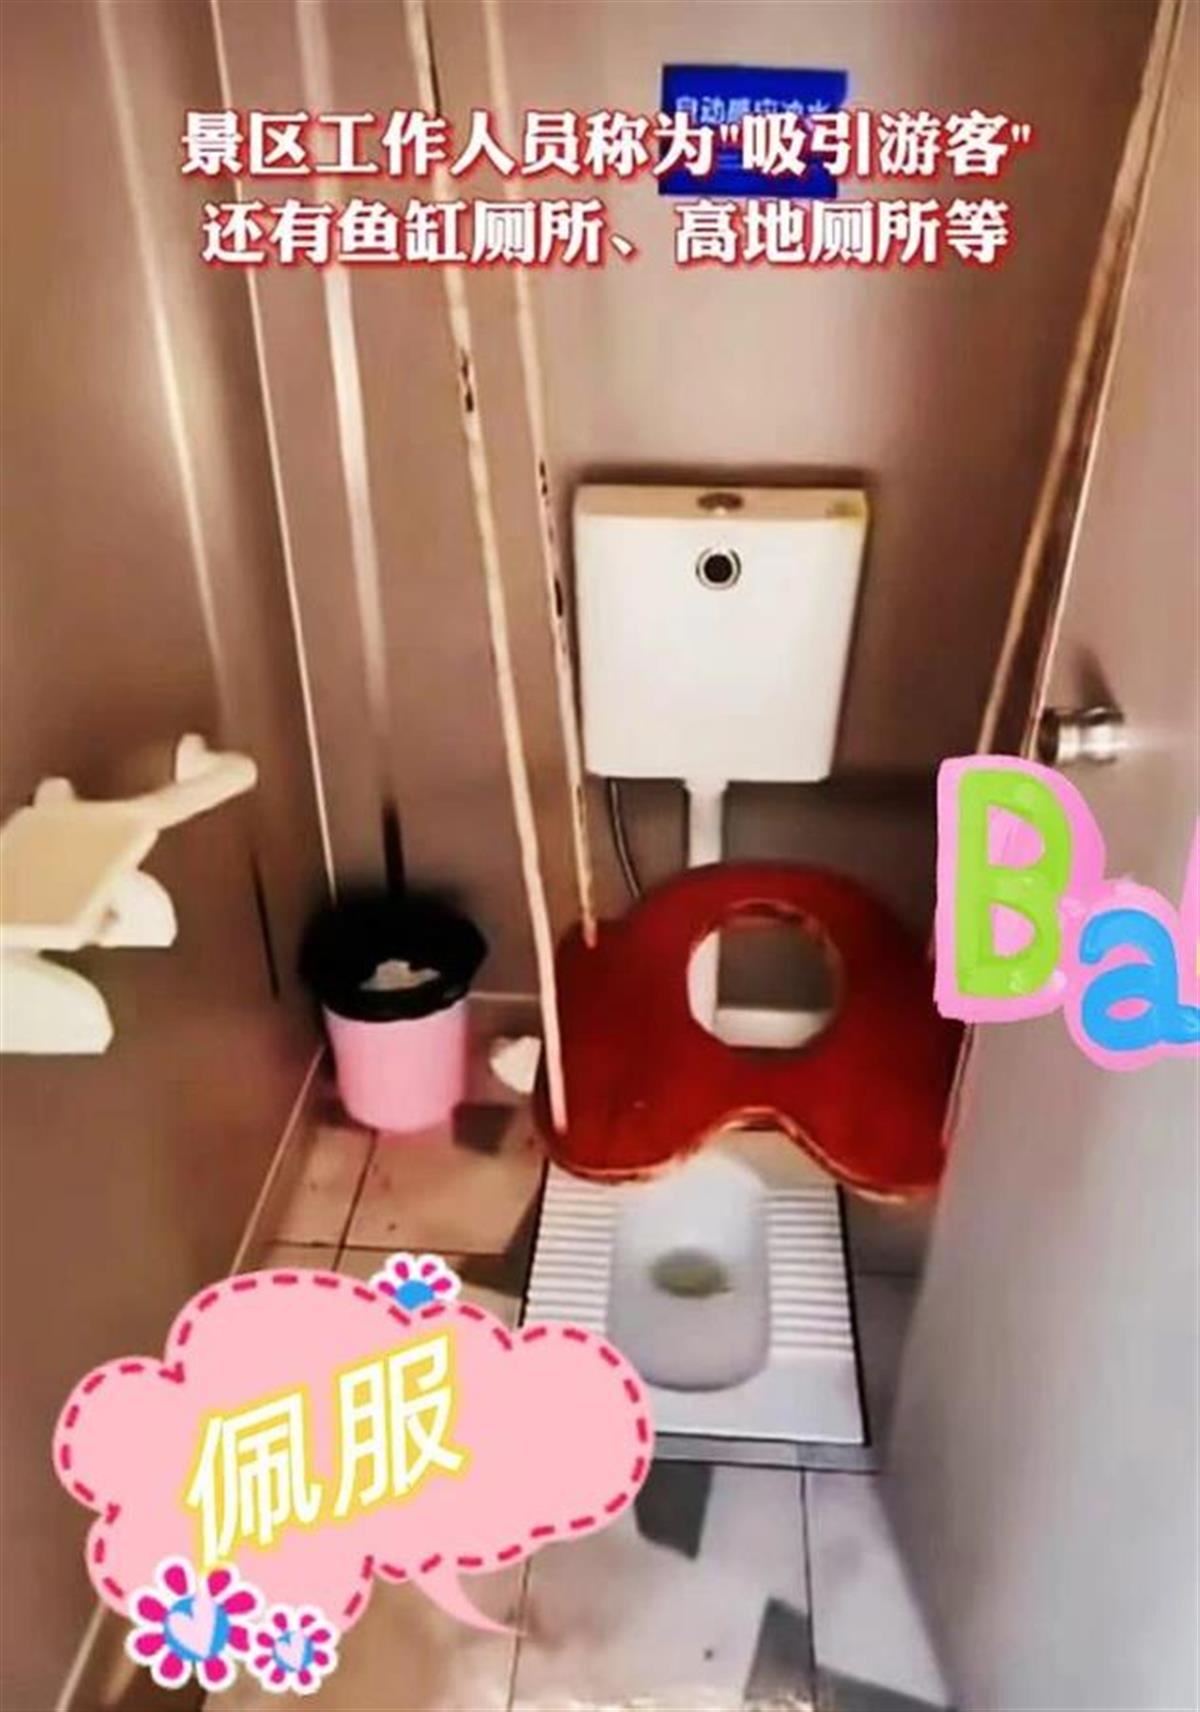 重慶景區內發現“秋千廁所”，坐在秋千上解手...